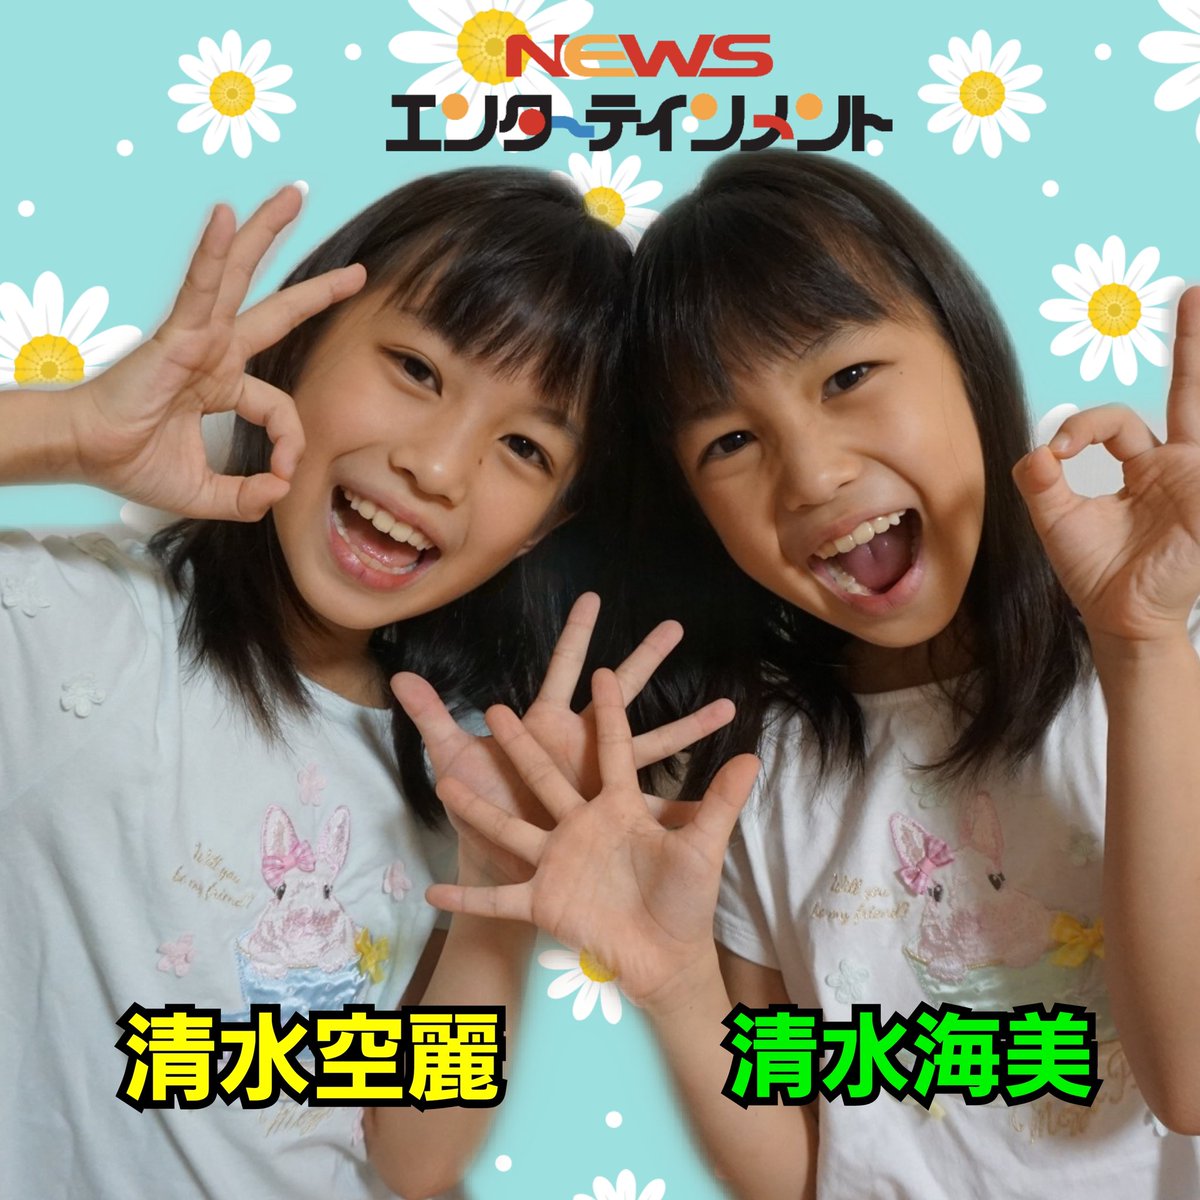 清水空羅 そら 海美 うみ の双子の年齢は フジッコcmのふりふりダンスが可愛い プロフィール Wakuwaku Information